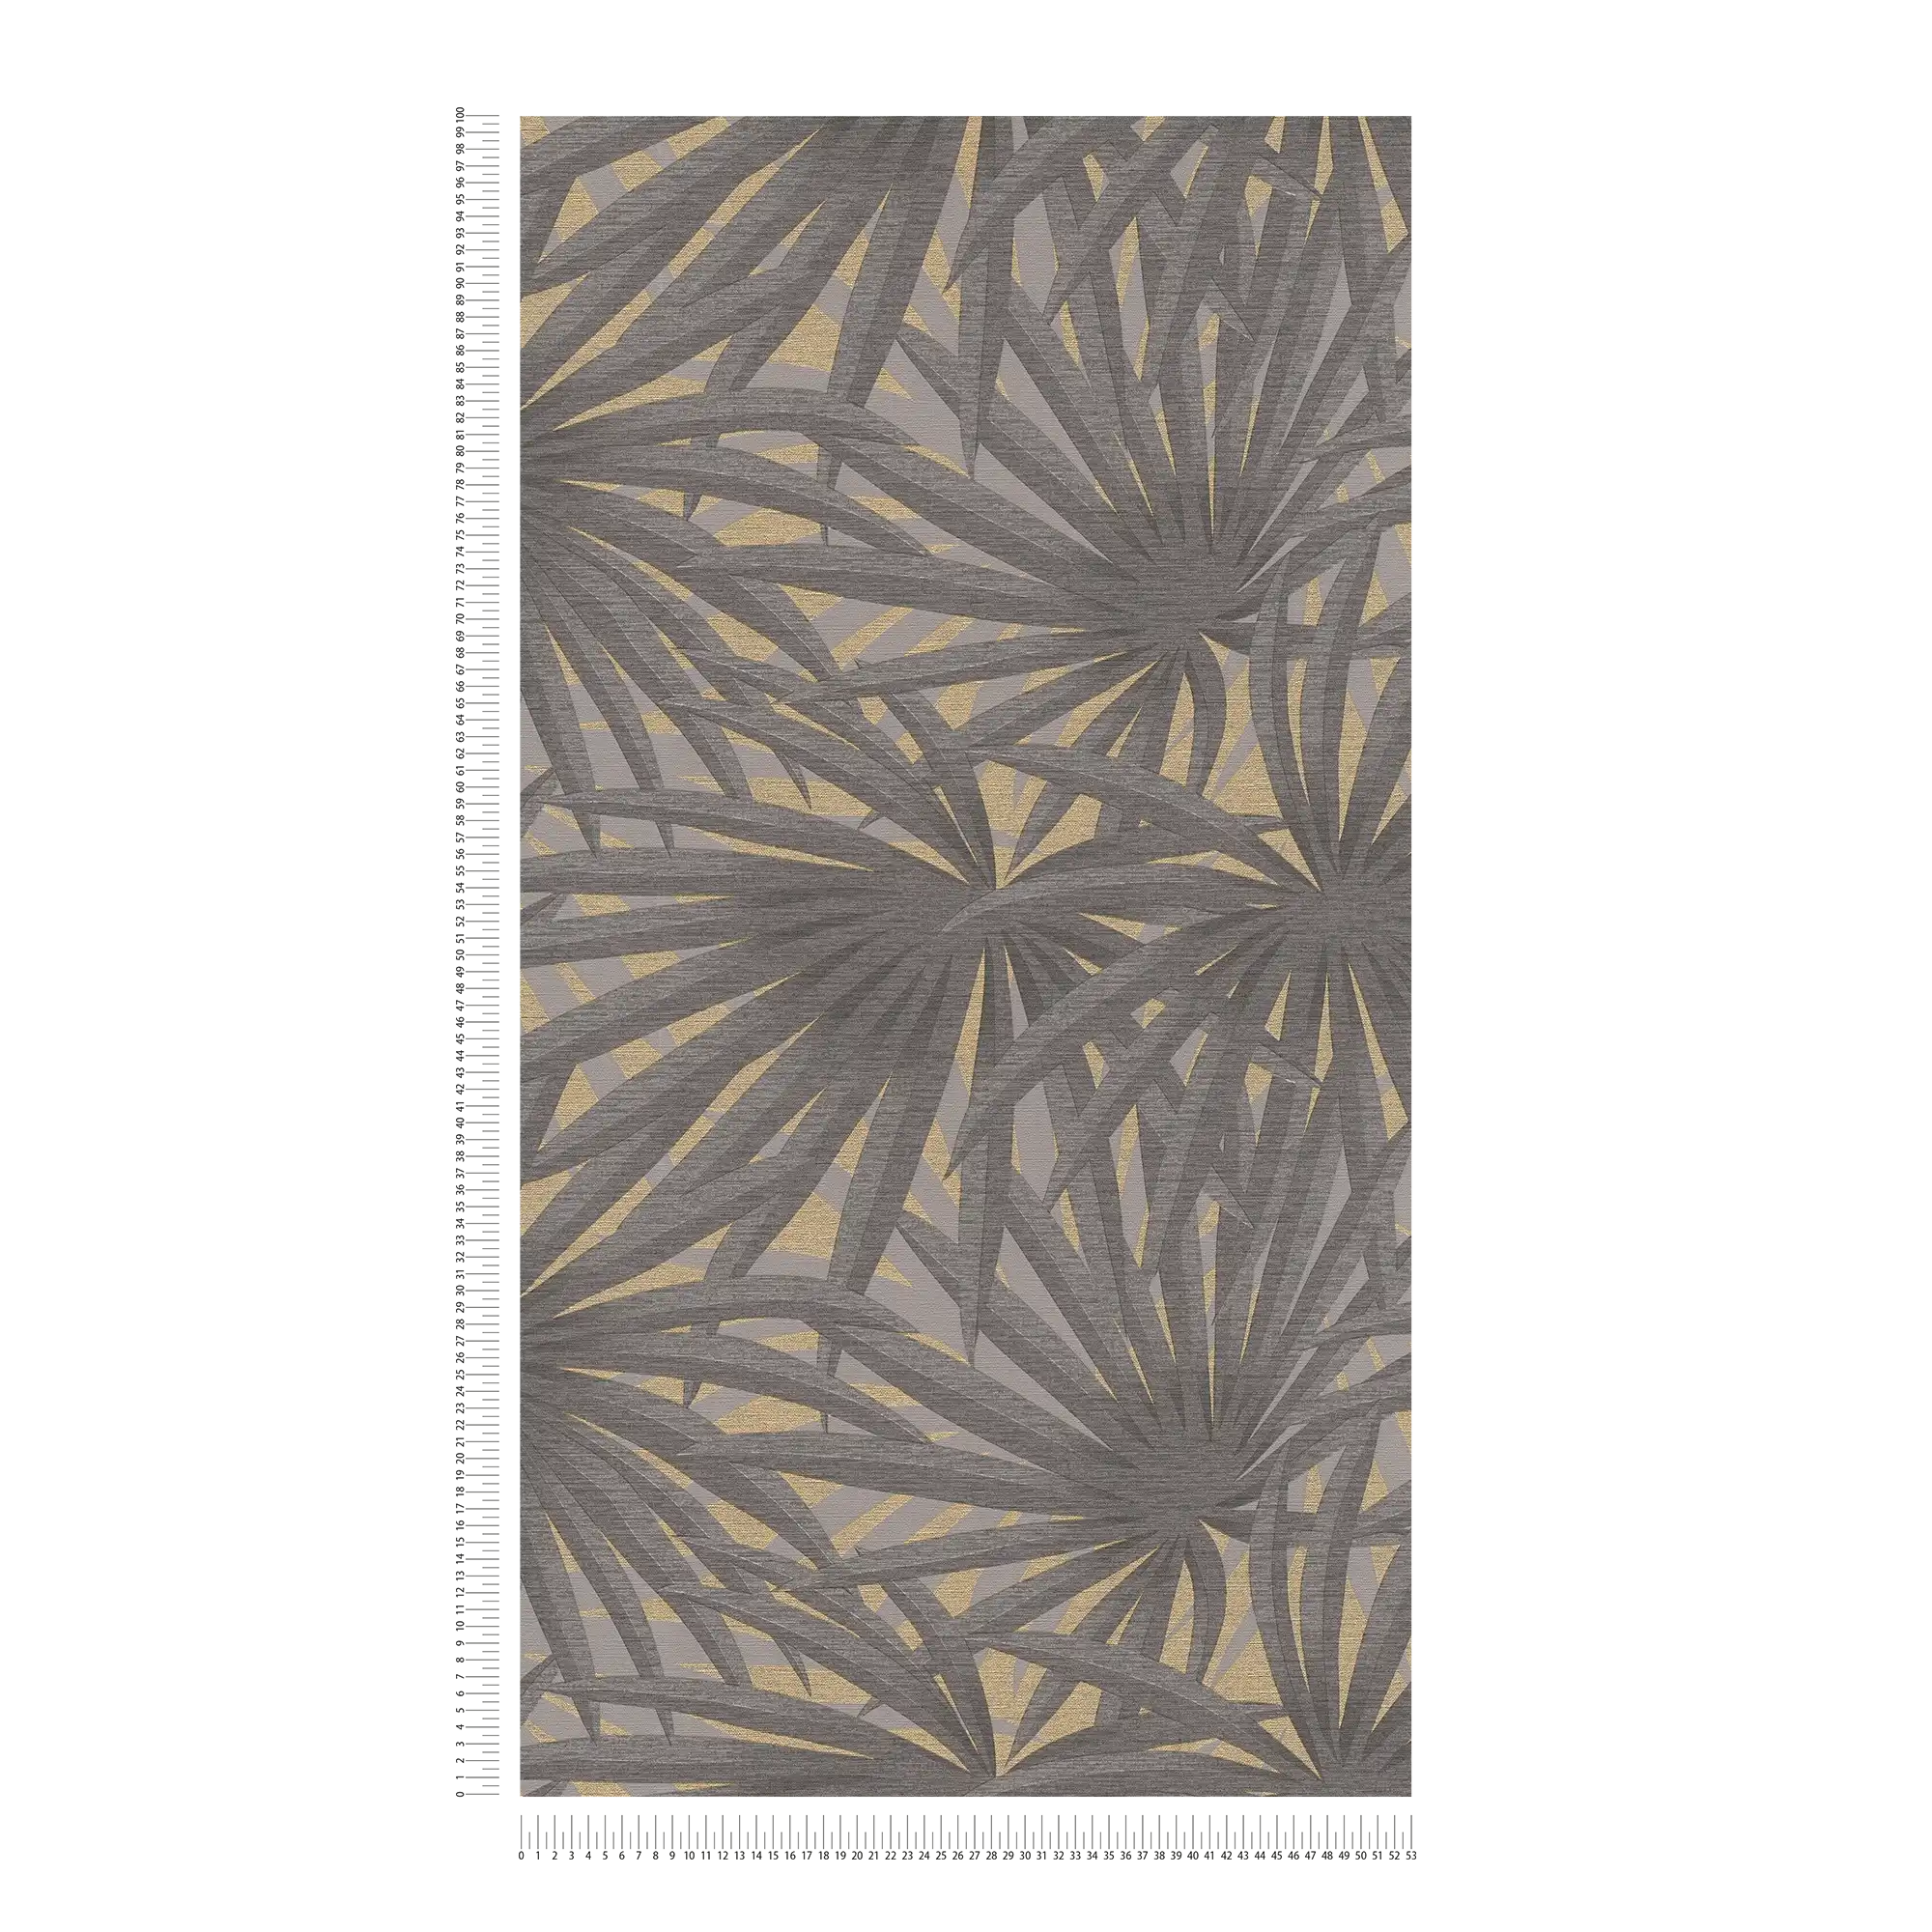             Papel pintado con motivos de hojas y acentos metálicos - Gris, Metálico
        